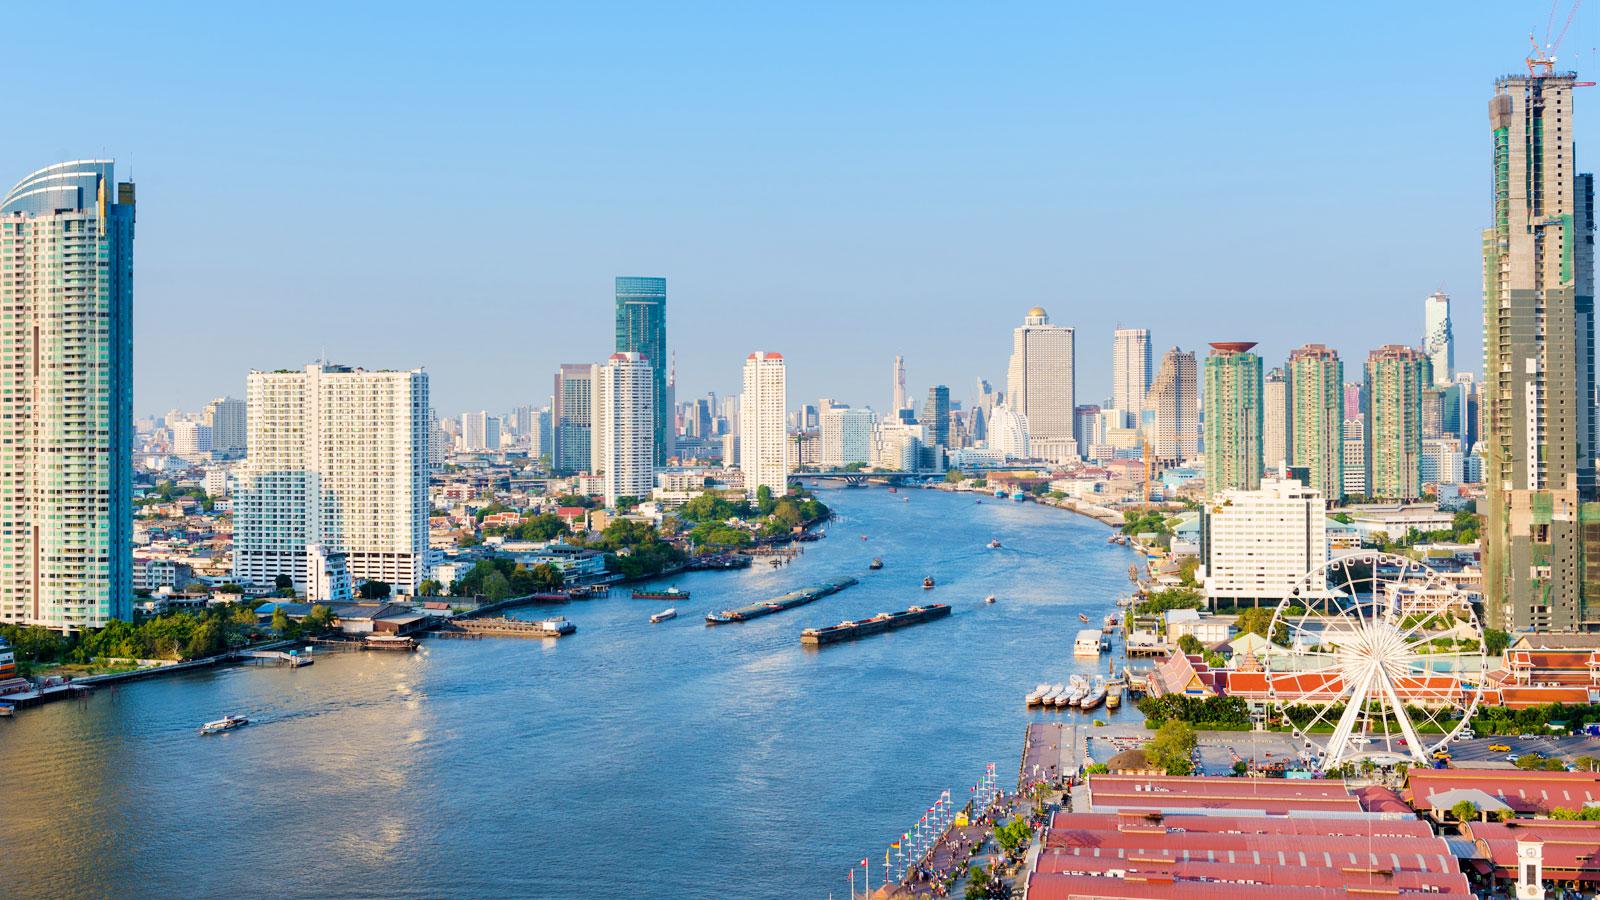 Tour du lịch Bangkok - Pattaya KH Tháng 3 HCM